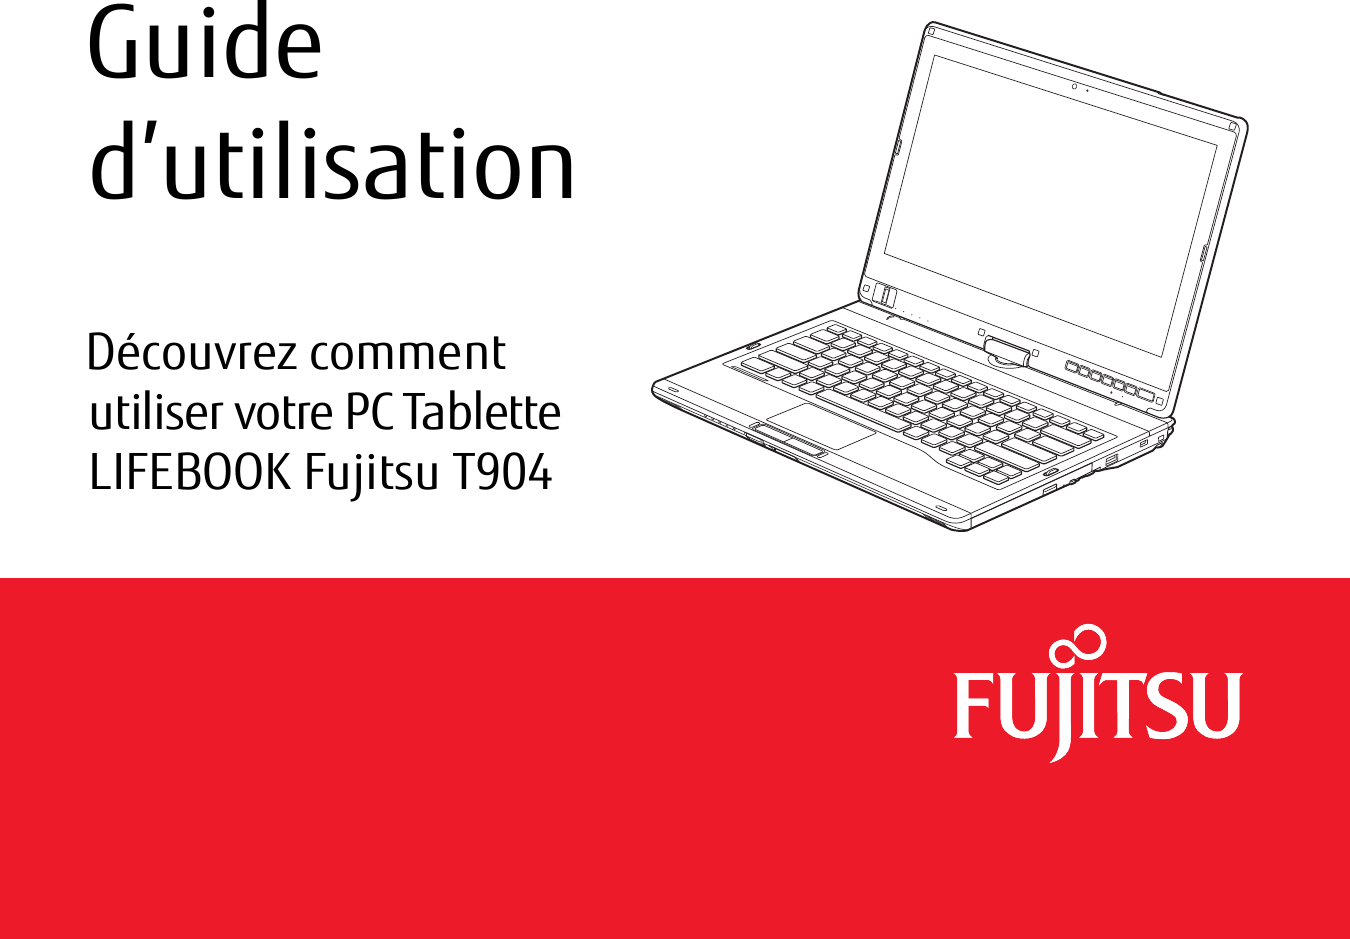 1 -  Guide d’utilisationDécouvrez comment utiliser votre PC Tablette LIFEBOOK Fujitsu T904